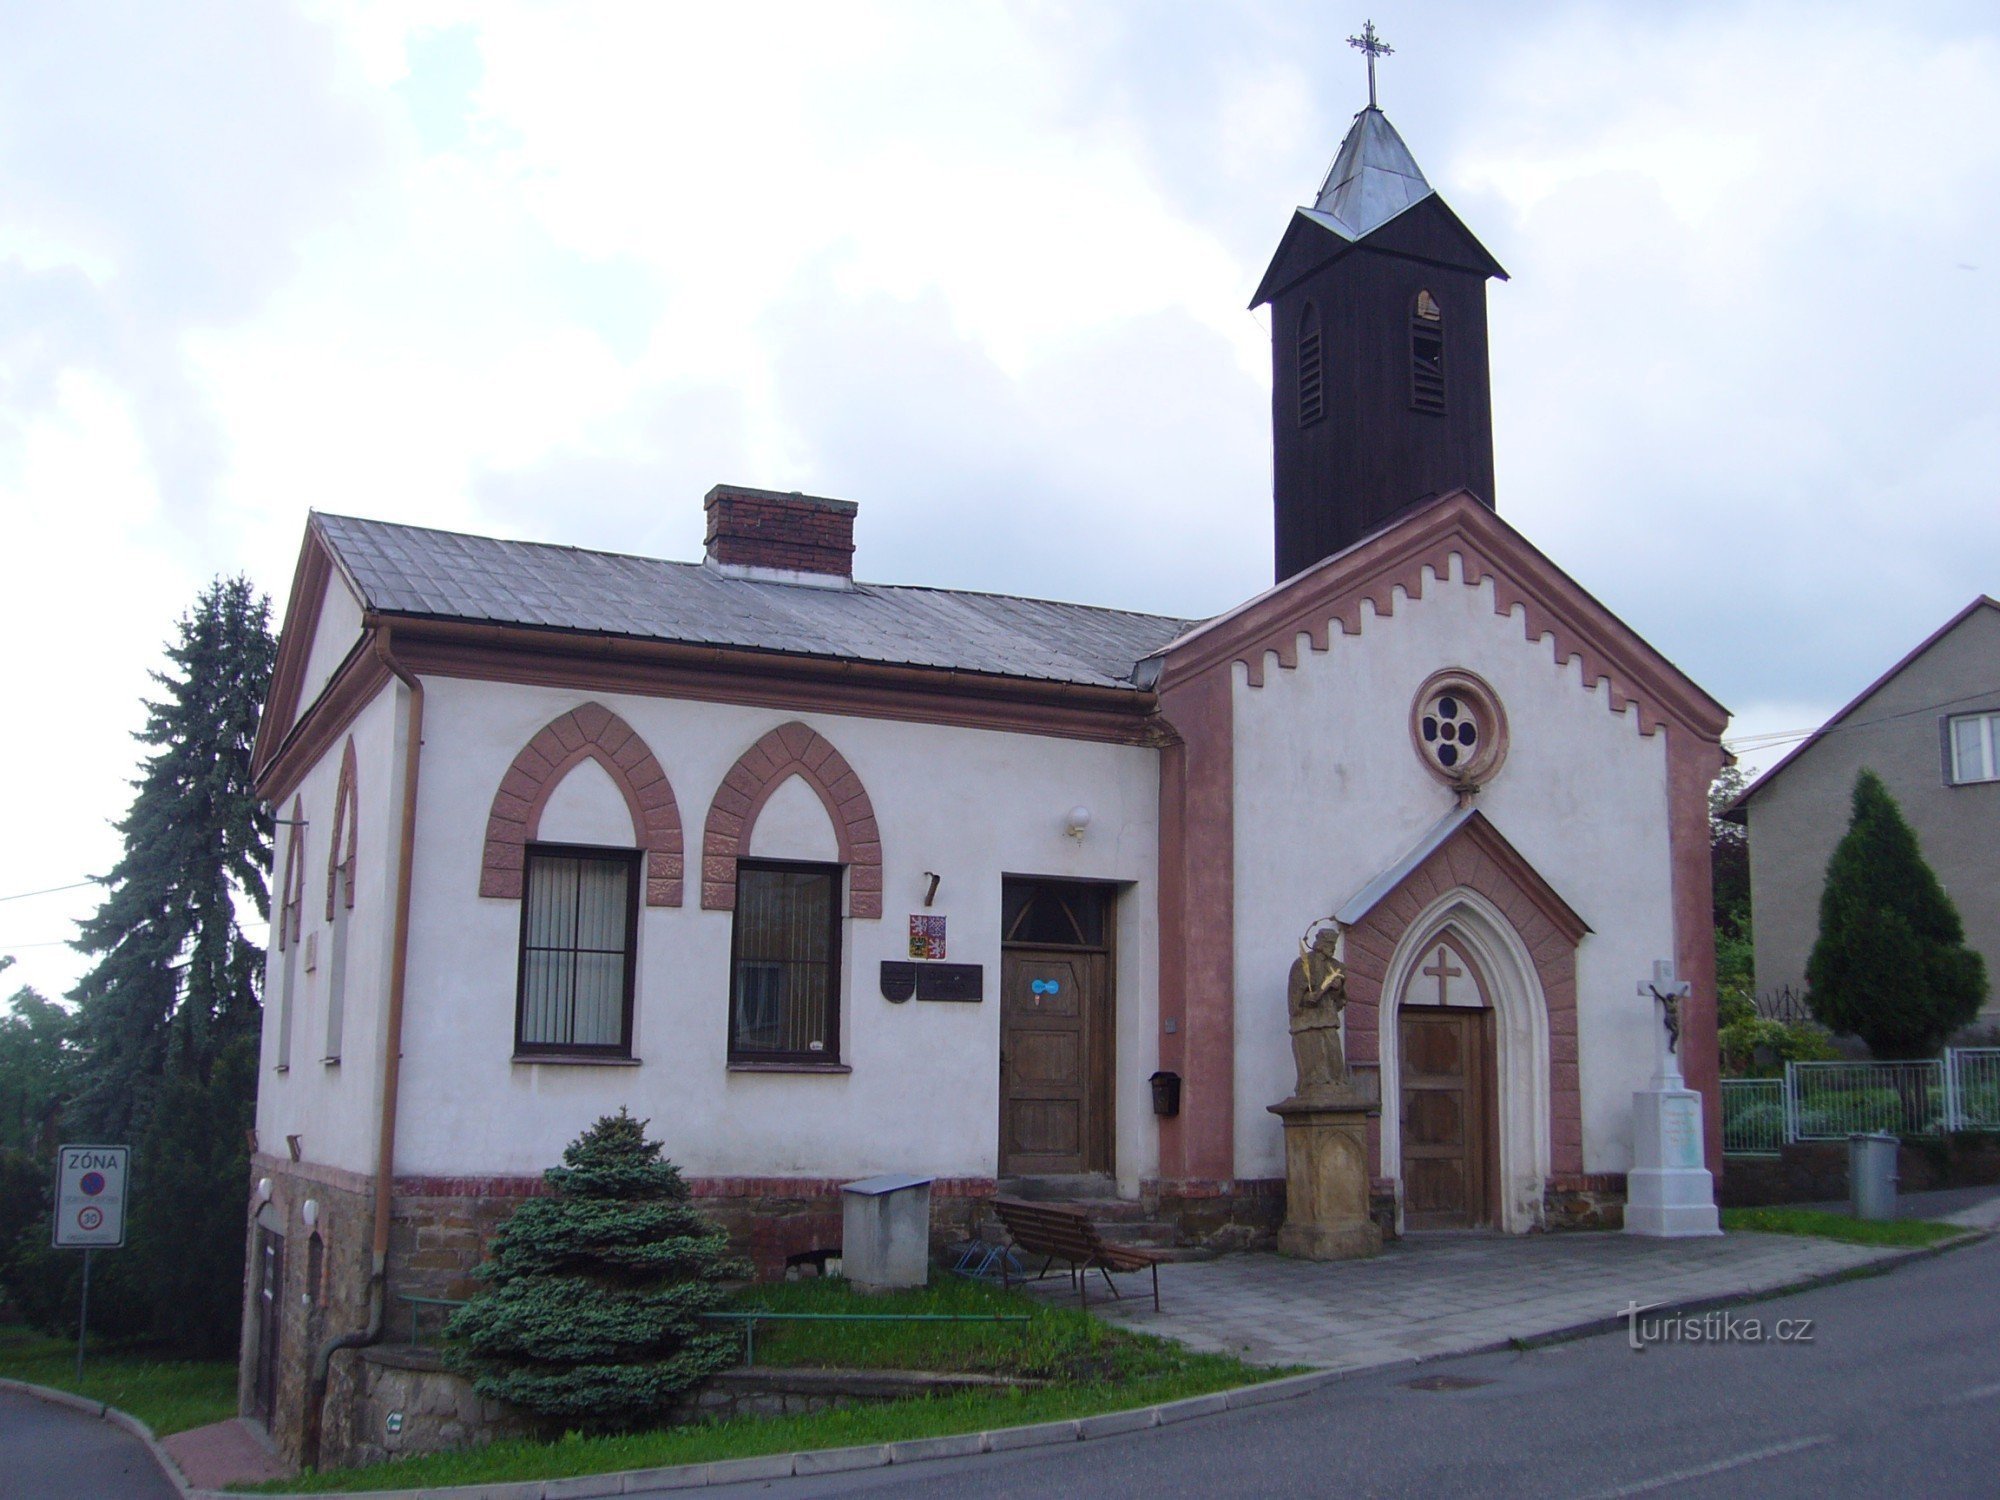 Dobroslavice - capela à direita, escritório municipal à esquerda